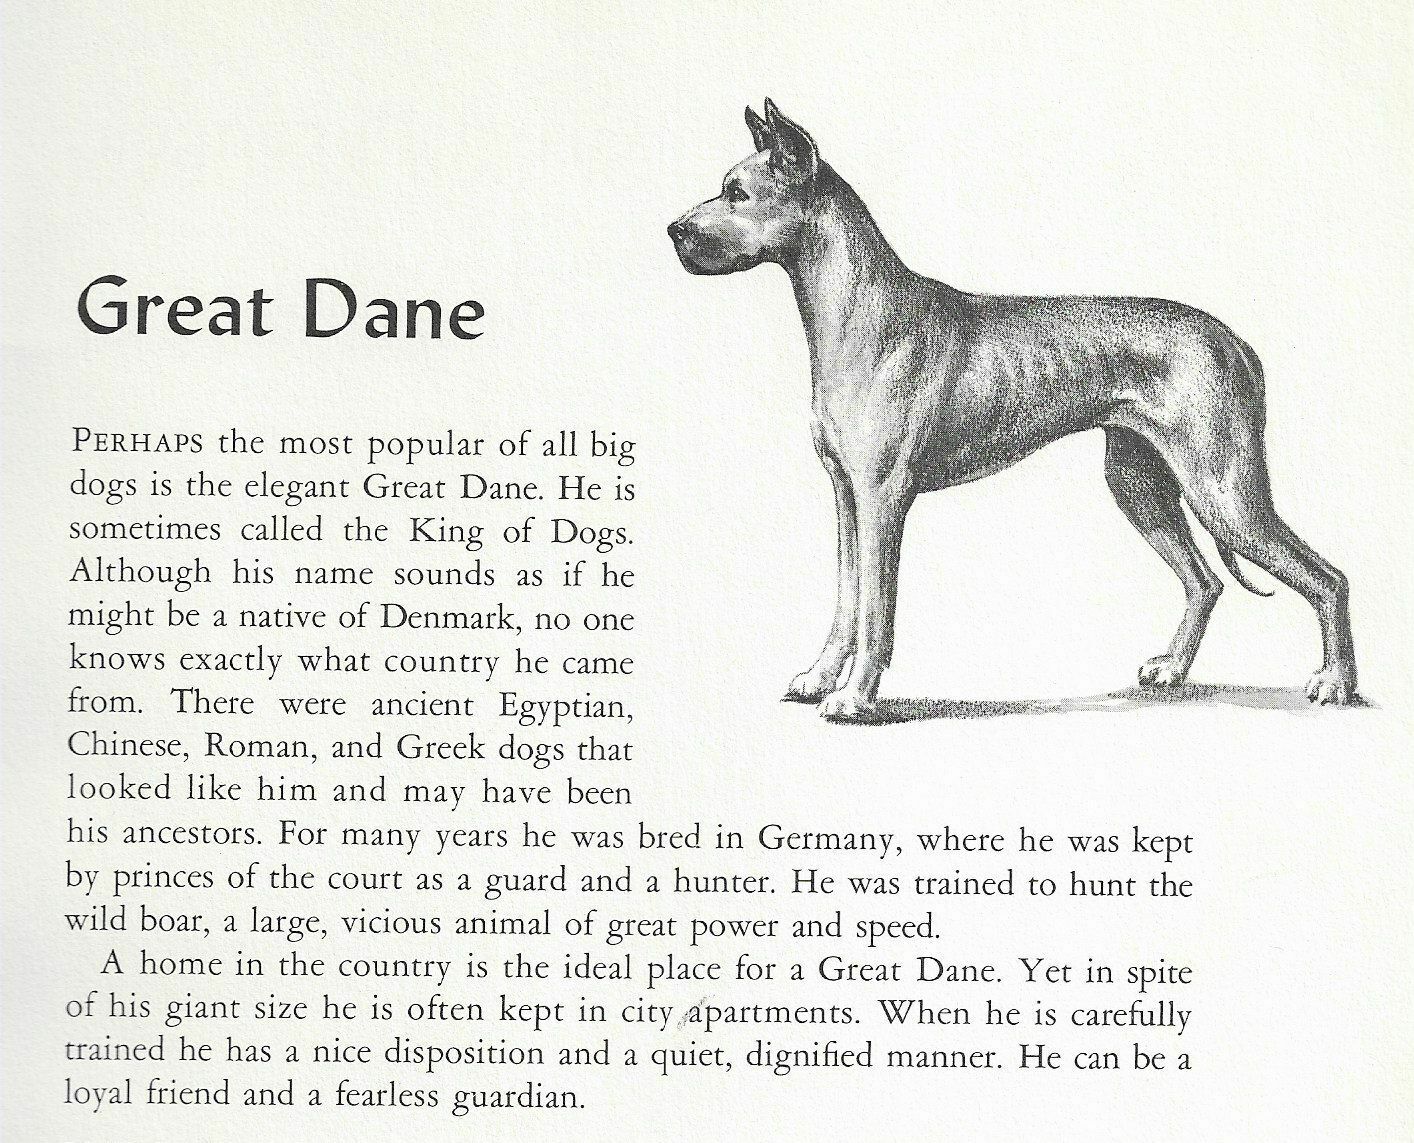 Great Dane - 1954 Vintage Dog Art Print - Matted